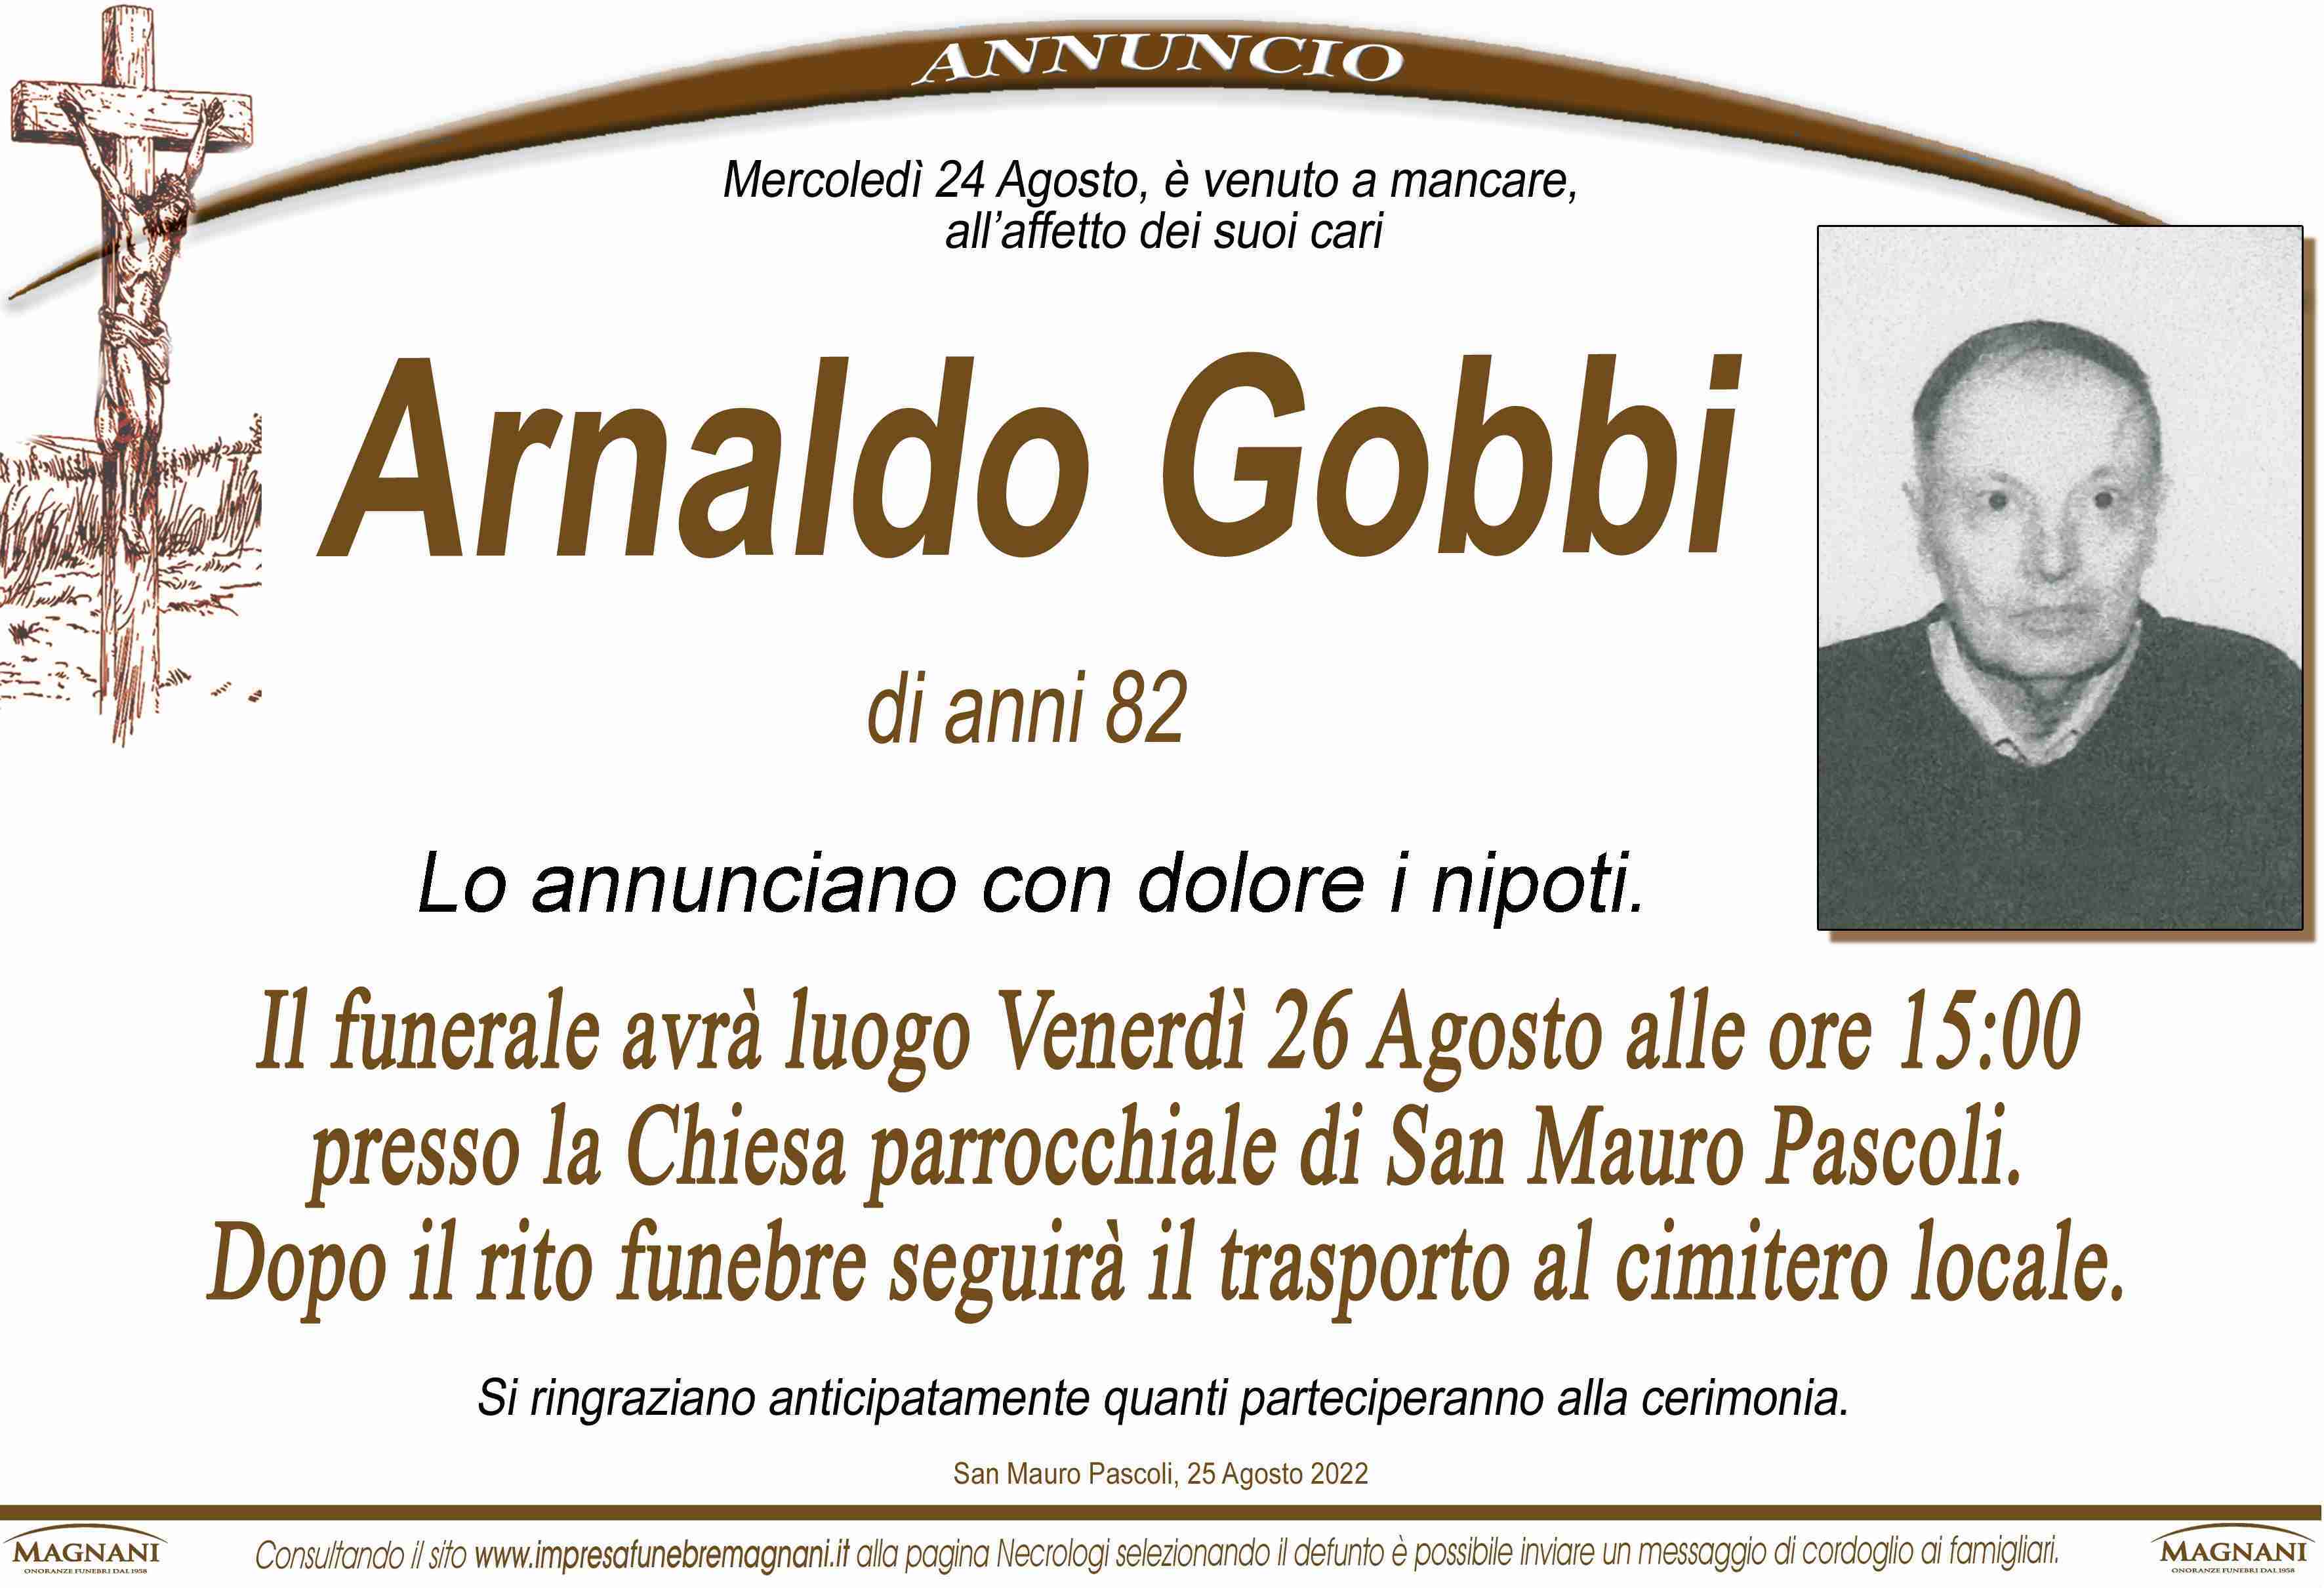 Arnaldo Gobbi